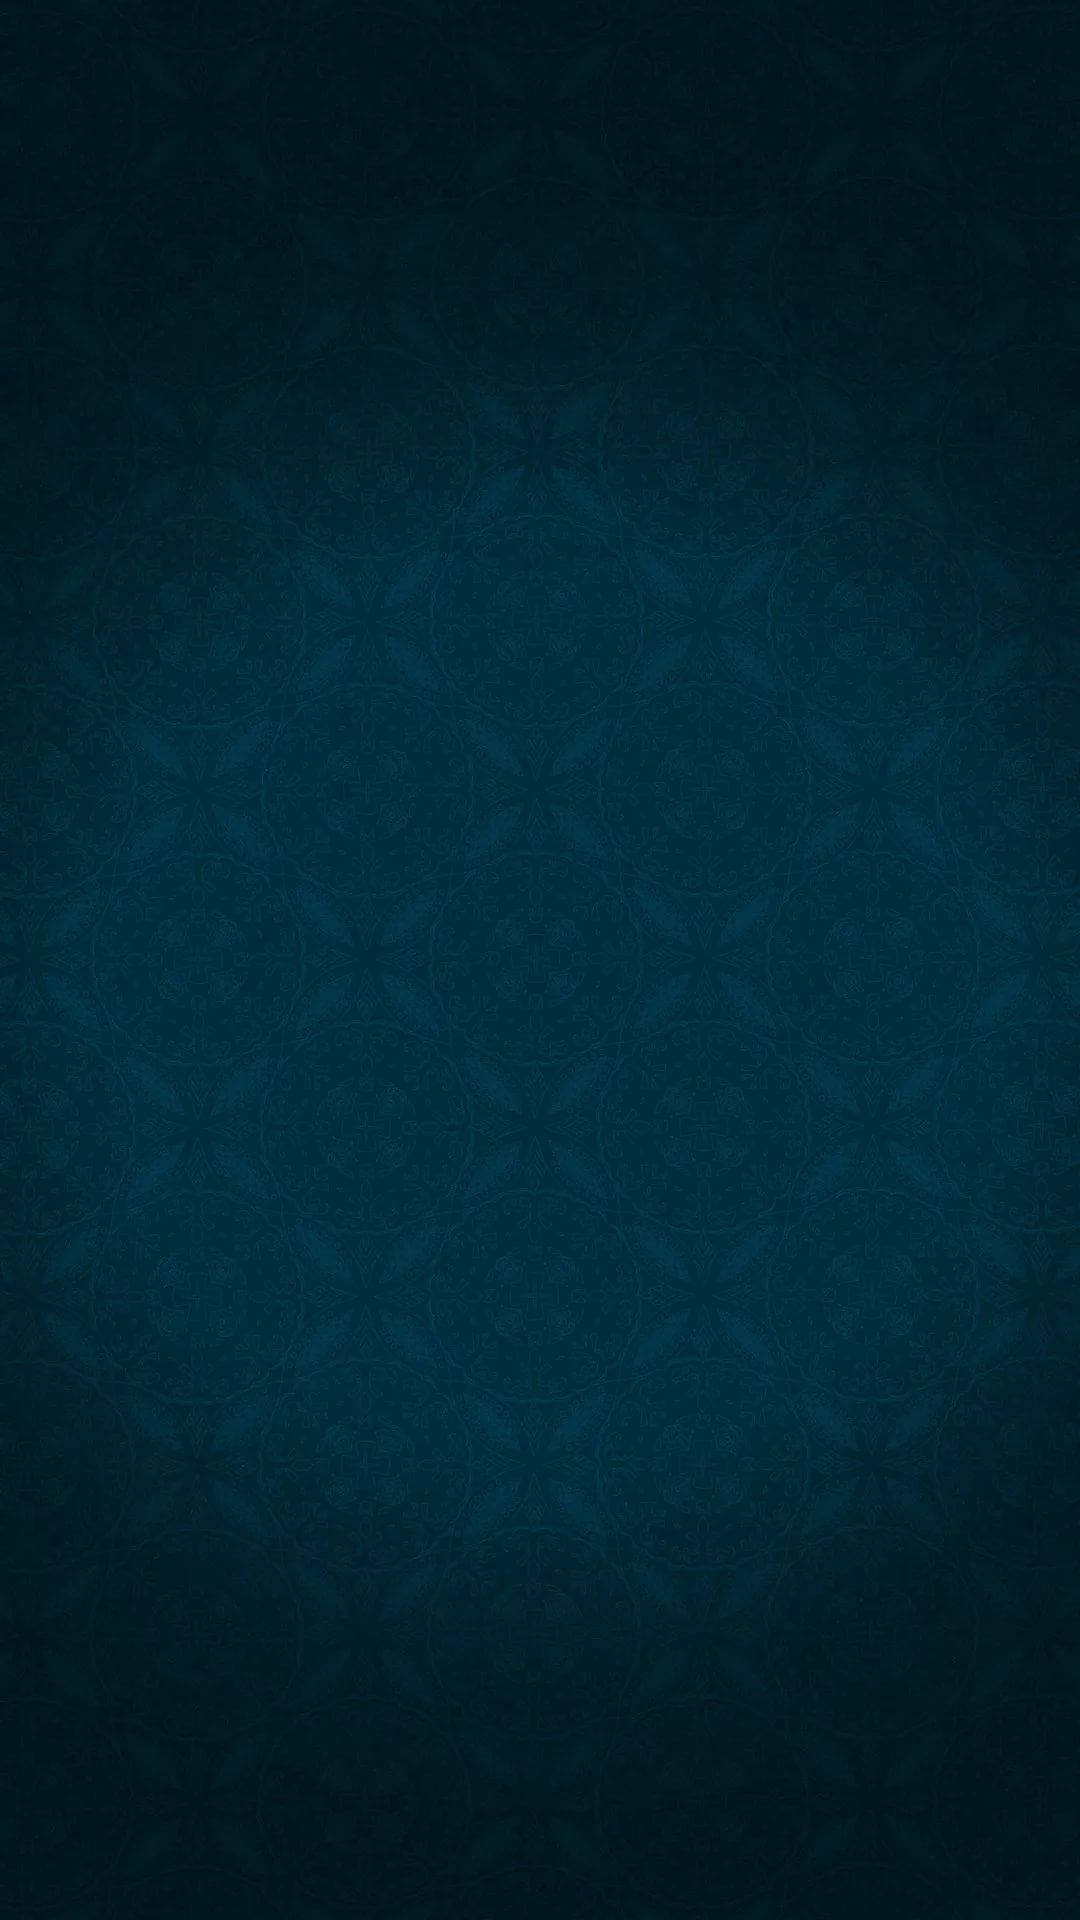 Mörkblå Iphone 1080 X 1920 Wallpaper